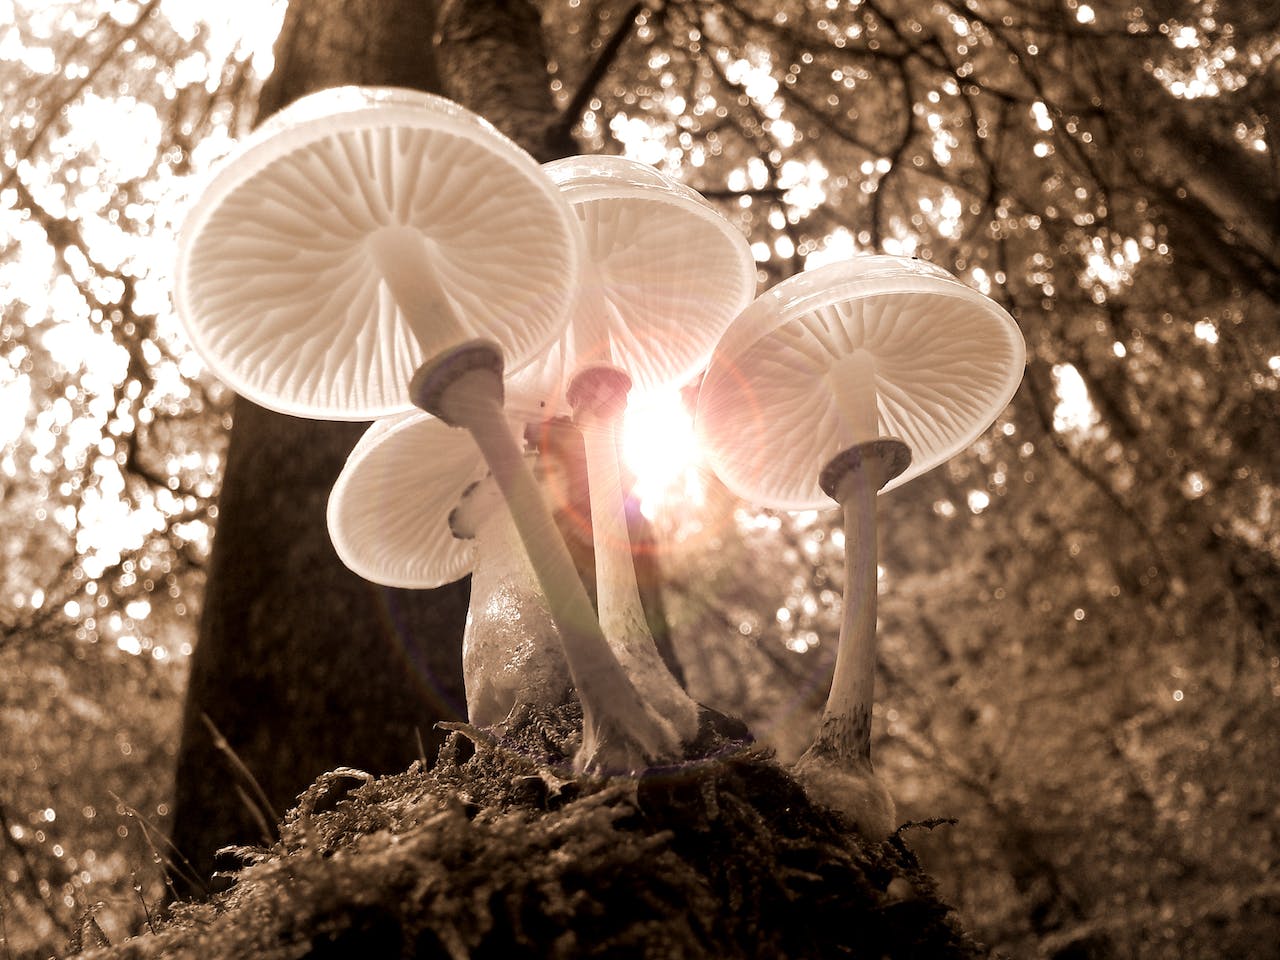 Mushroom Hunting in Arizona